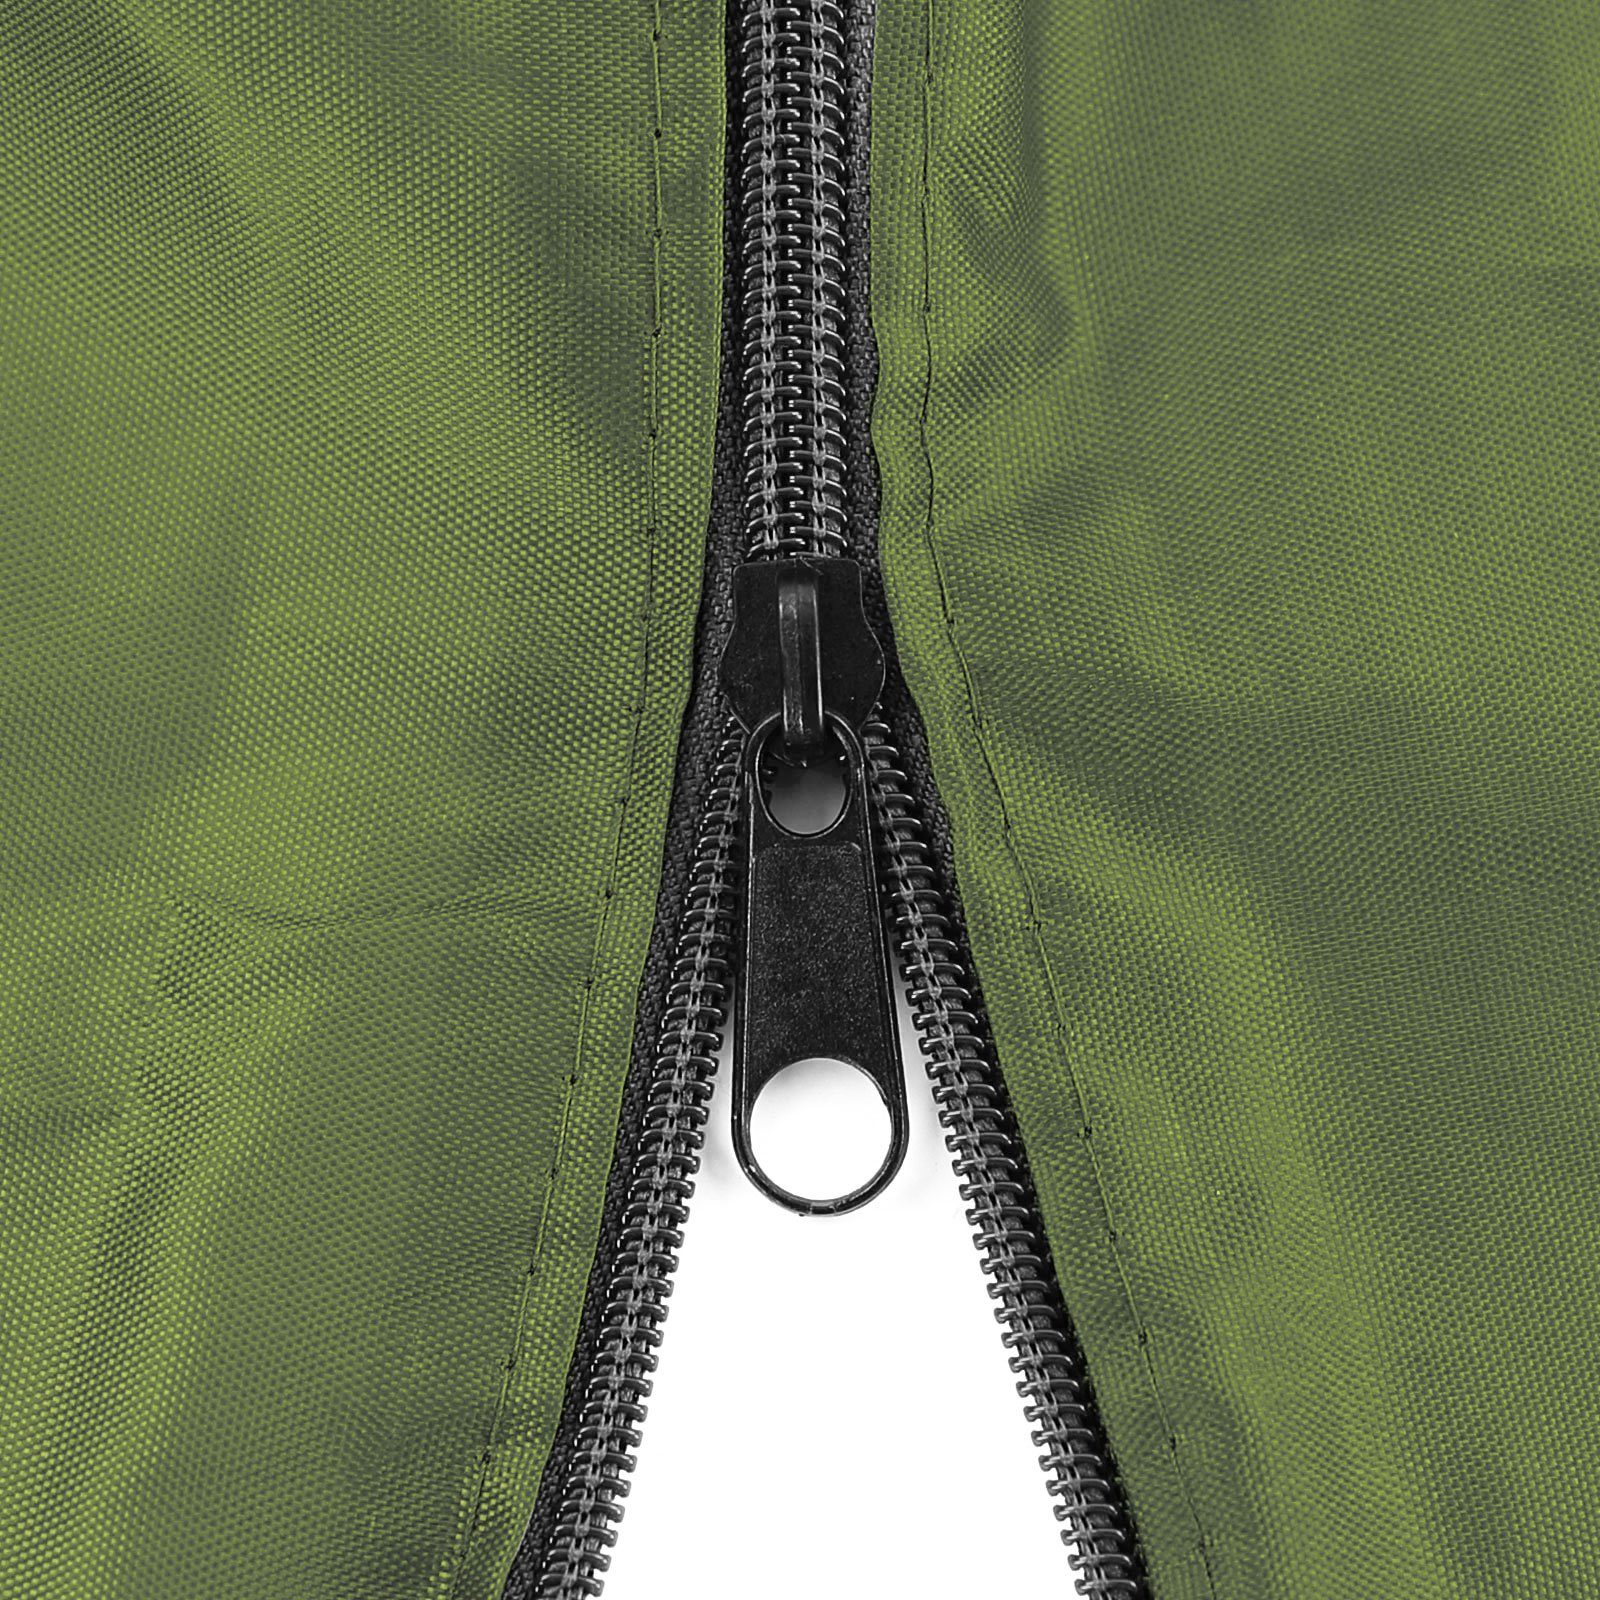 RAMROXX Hängesessel Premium Schutzabdeckung 190x100cm für Hängesessel Cover Grün Schutzhülle